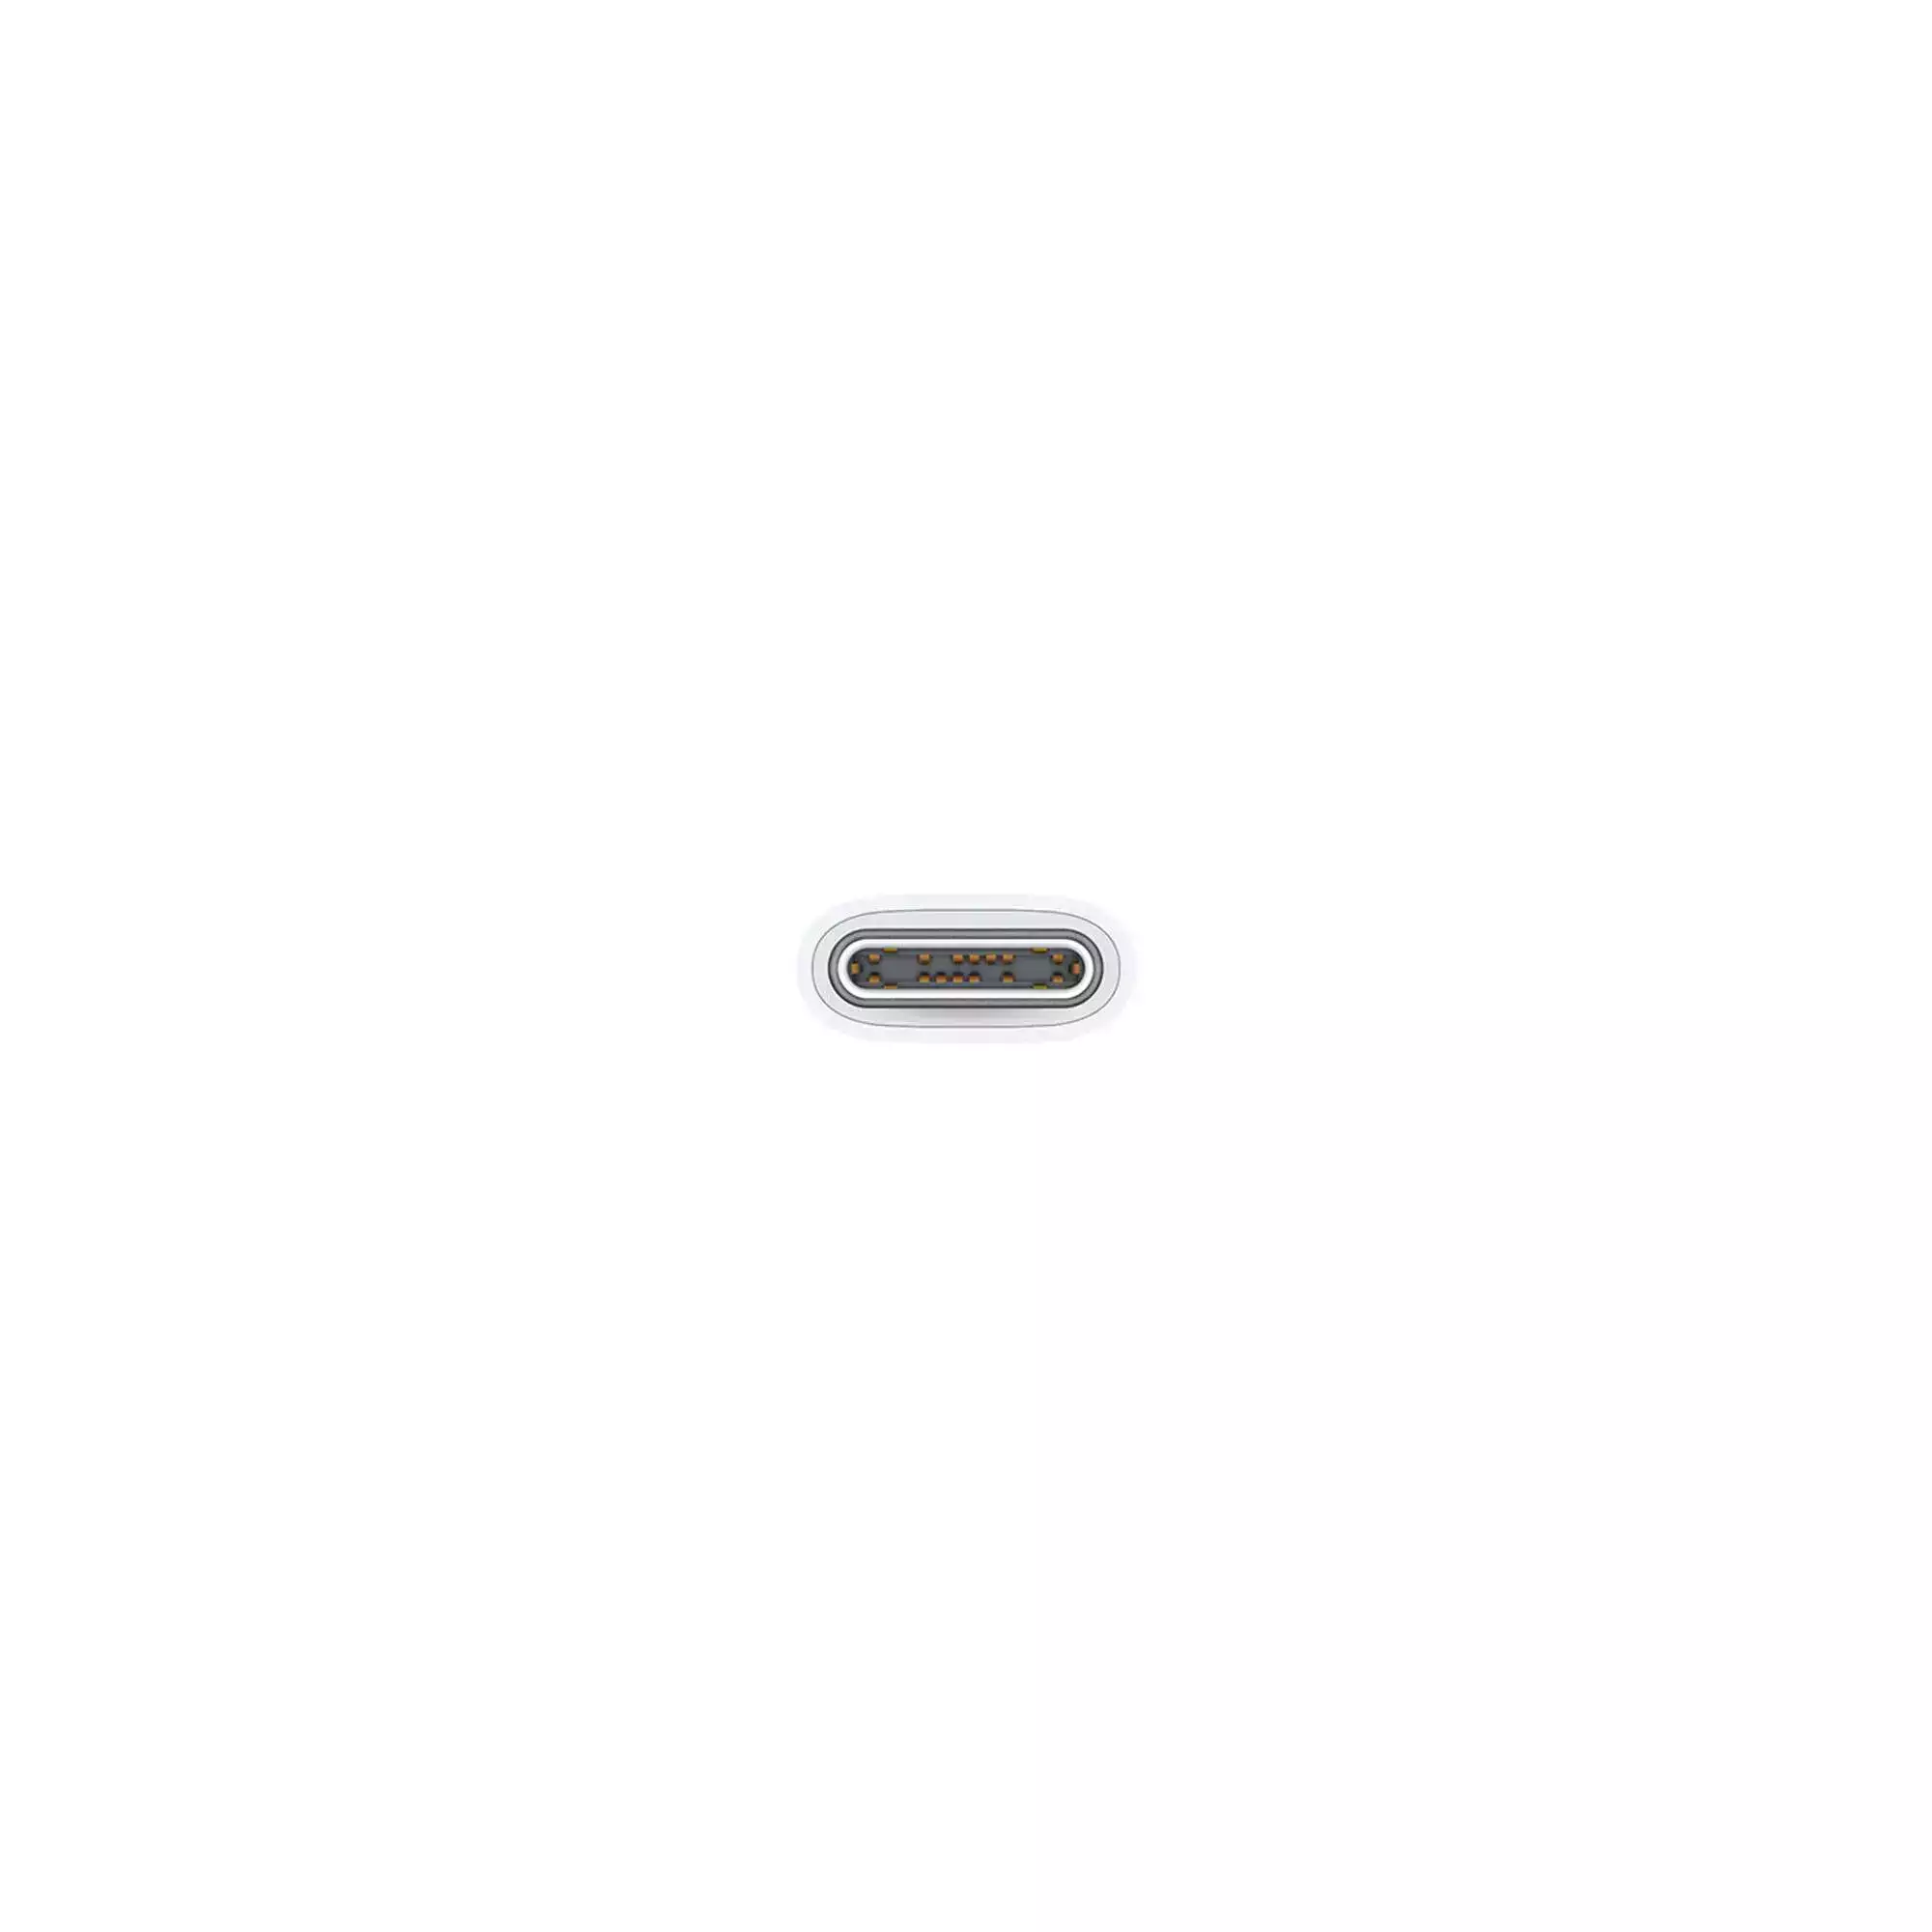 USB-C Örgü Şarj Kablosu (1 m) MQKJ3ZM/A